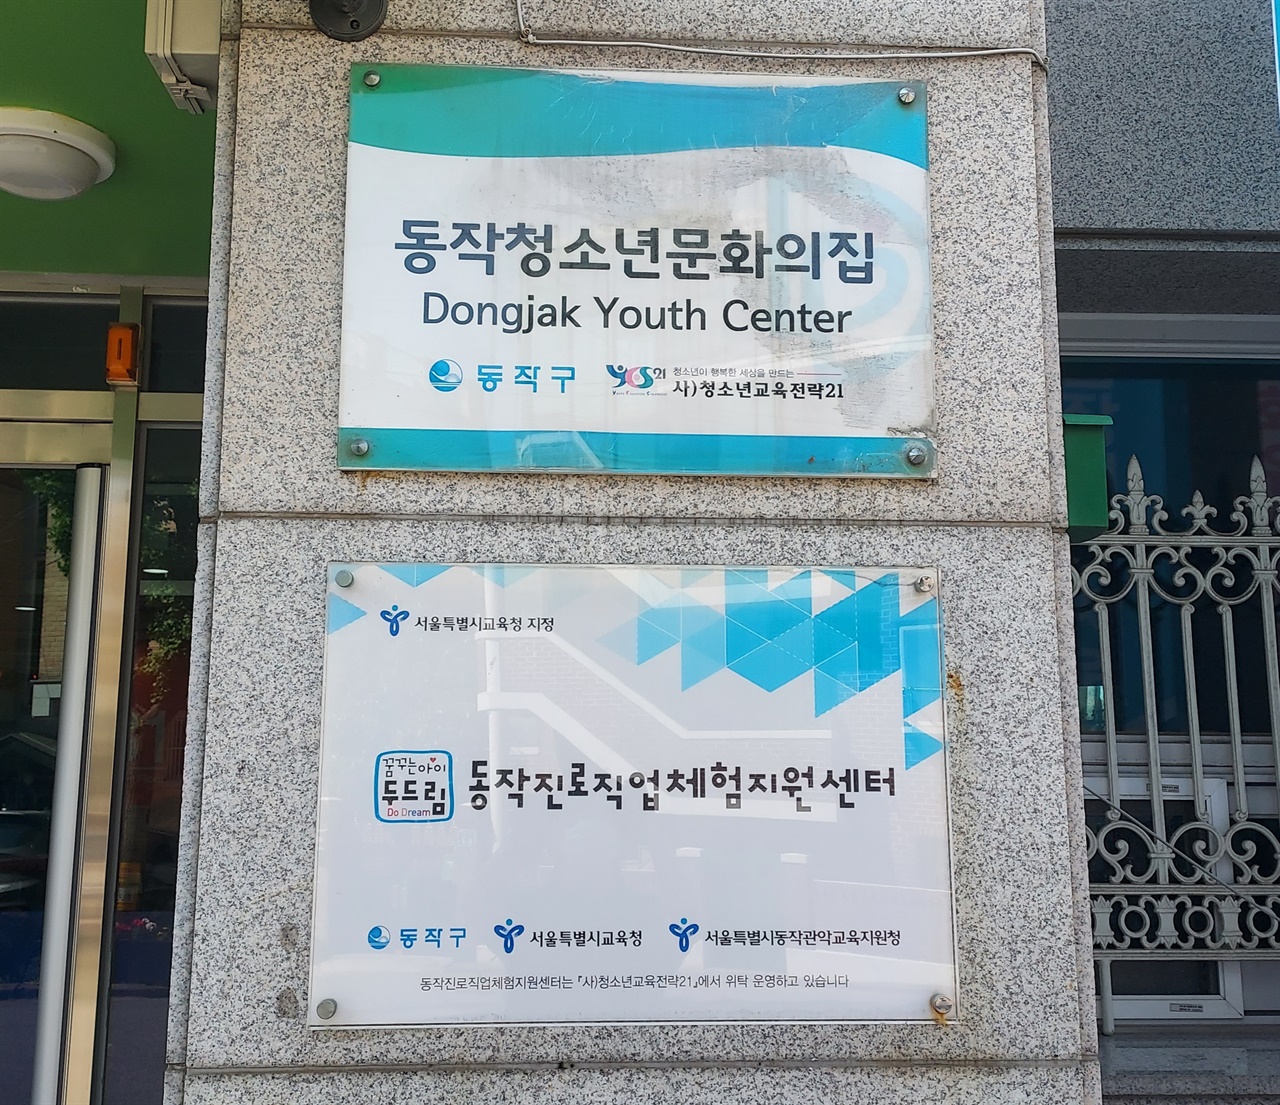 동작청소년문화의집은 지역사회 청소년들을 위한 편안한 쉼터같은 역할을 하고 있으며 서울형혁신교육지구 사업인 '아무거나 프로젝트'를 통해 청소년들의 꿈을 지원하고 있다. 